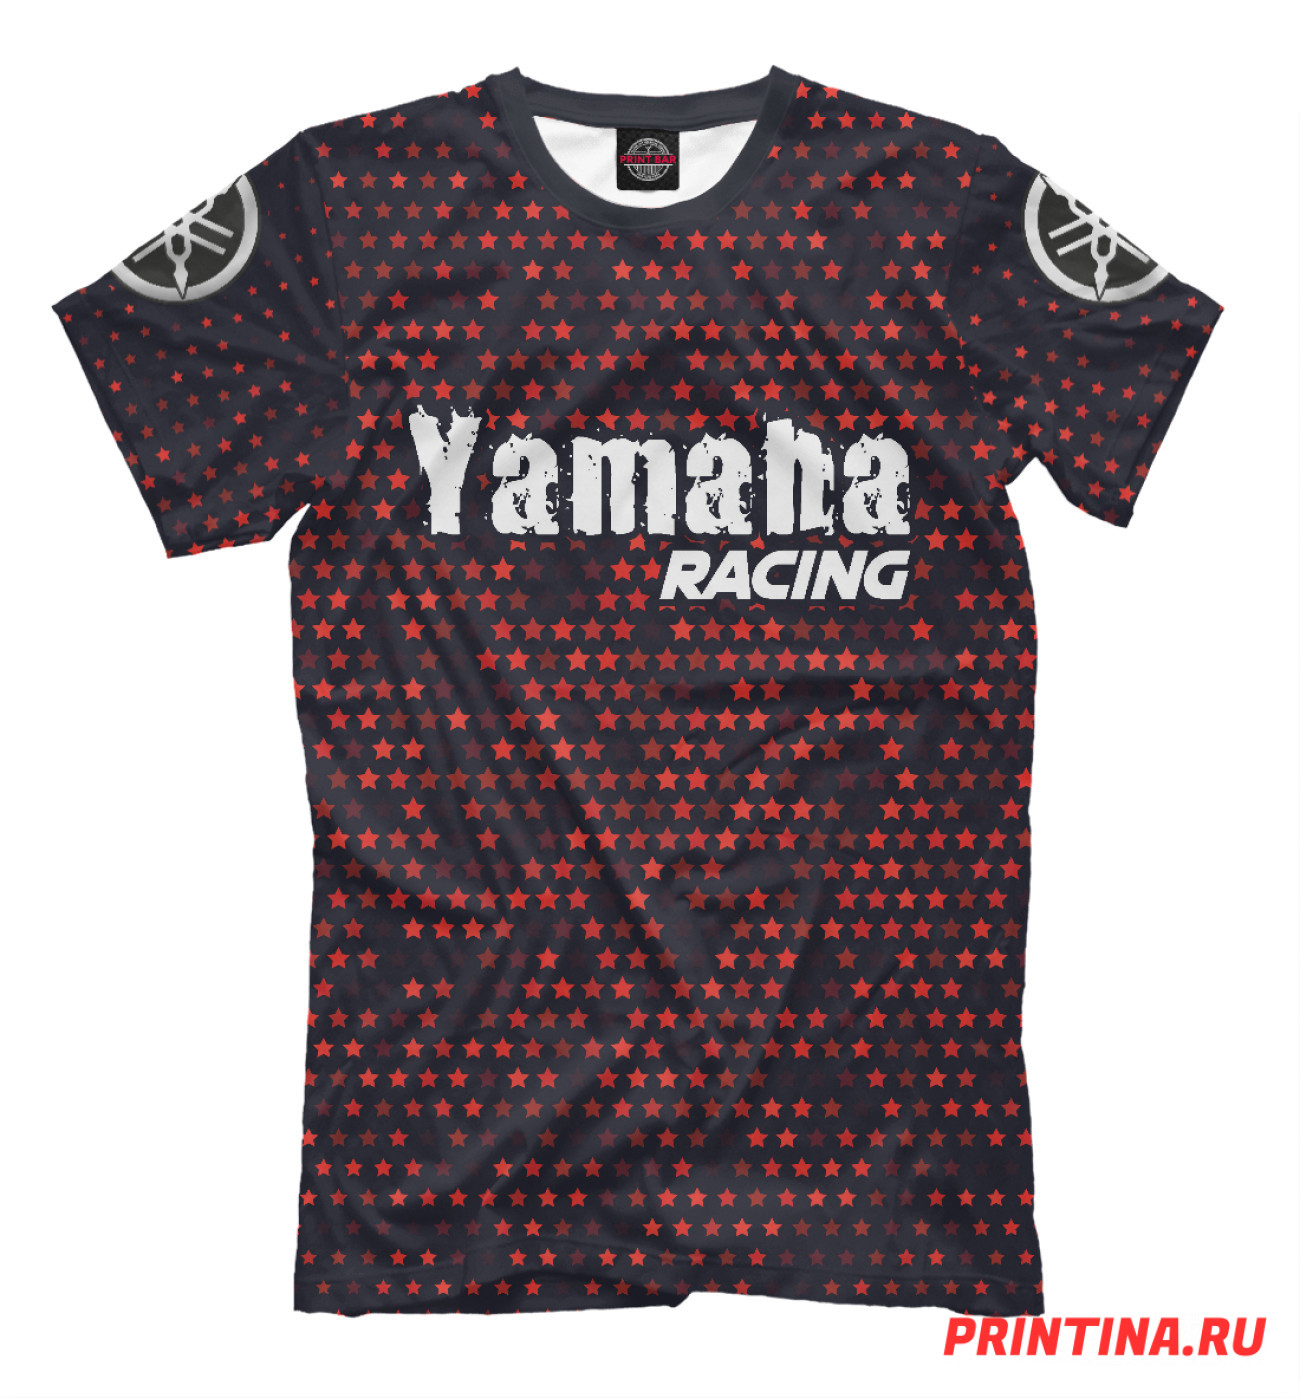 Мужская Футболка Ямаха | Yamaha Racing, артикул: YAM-791427-fut-2